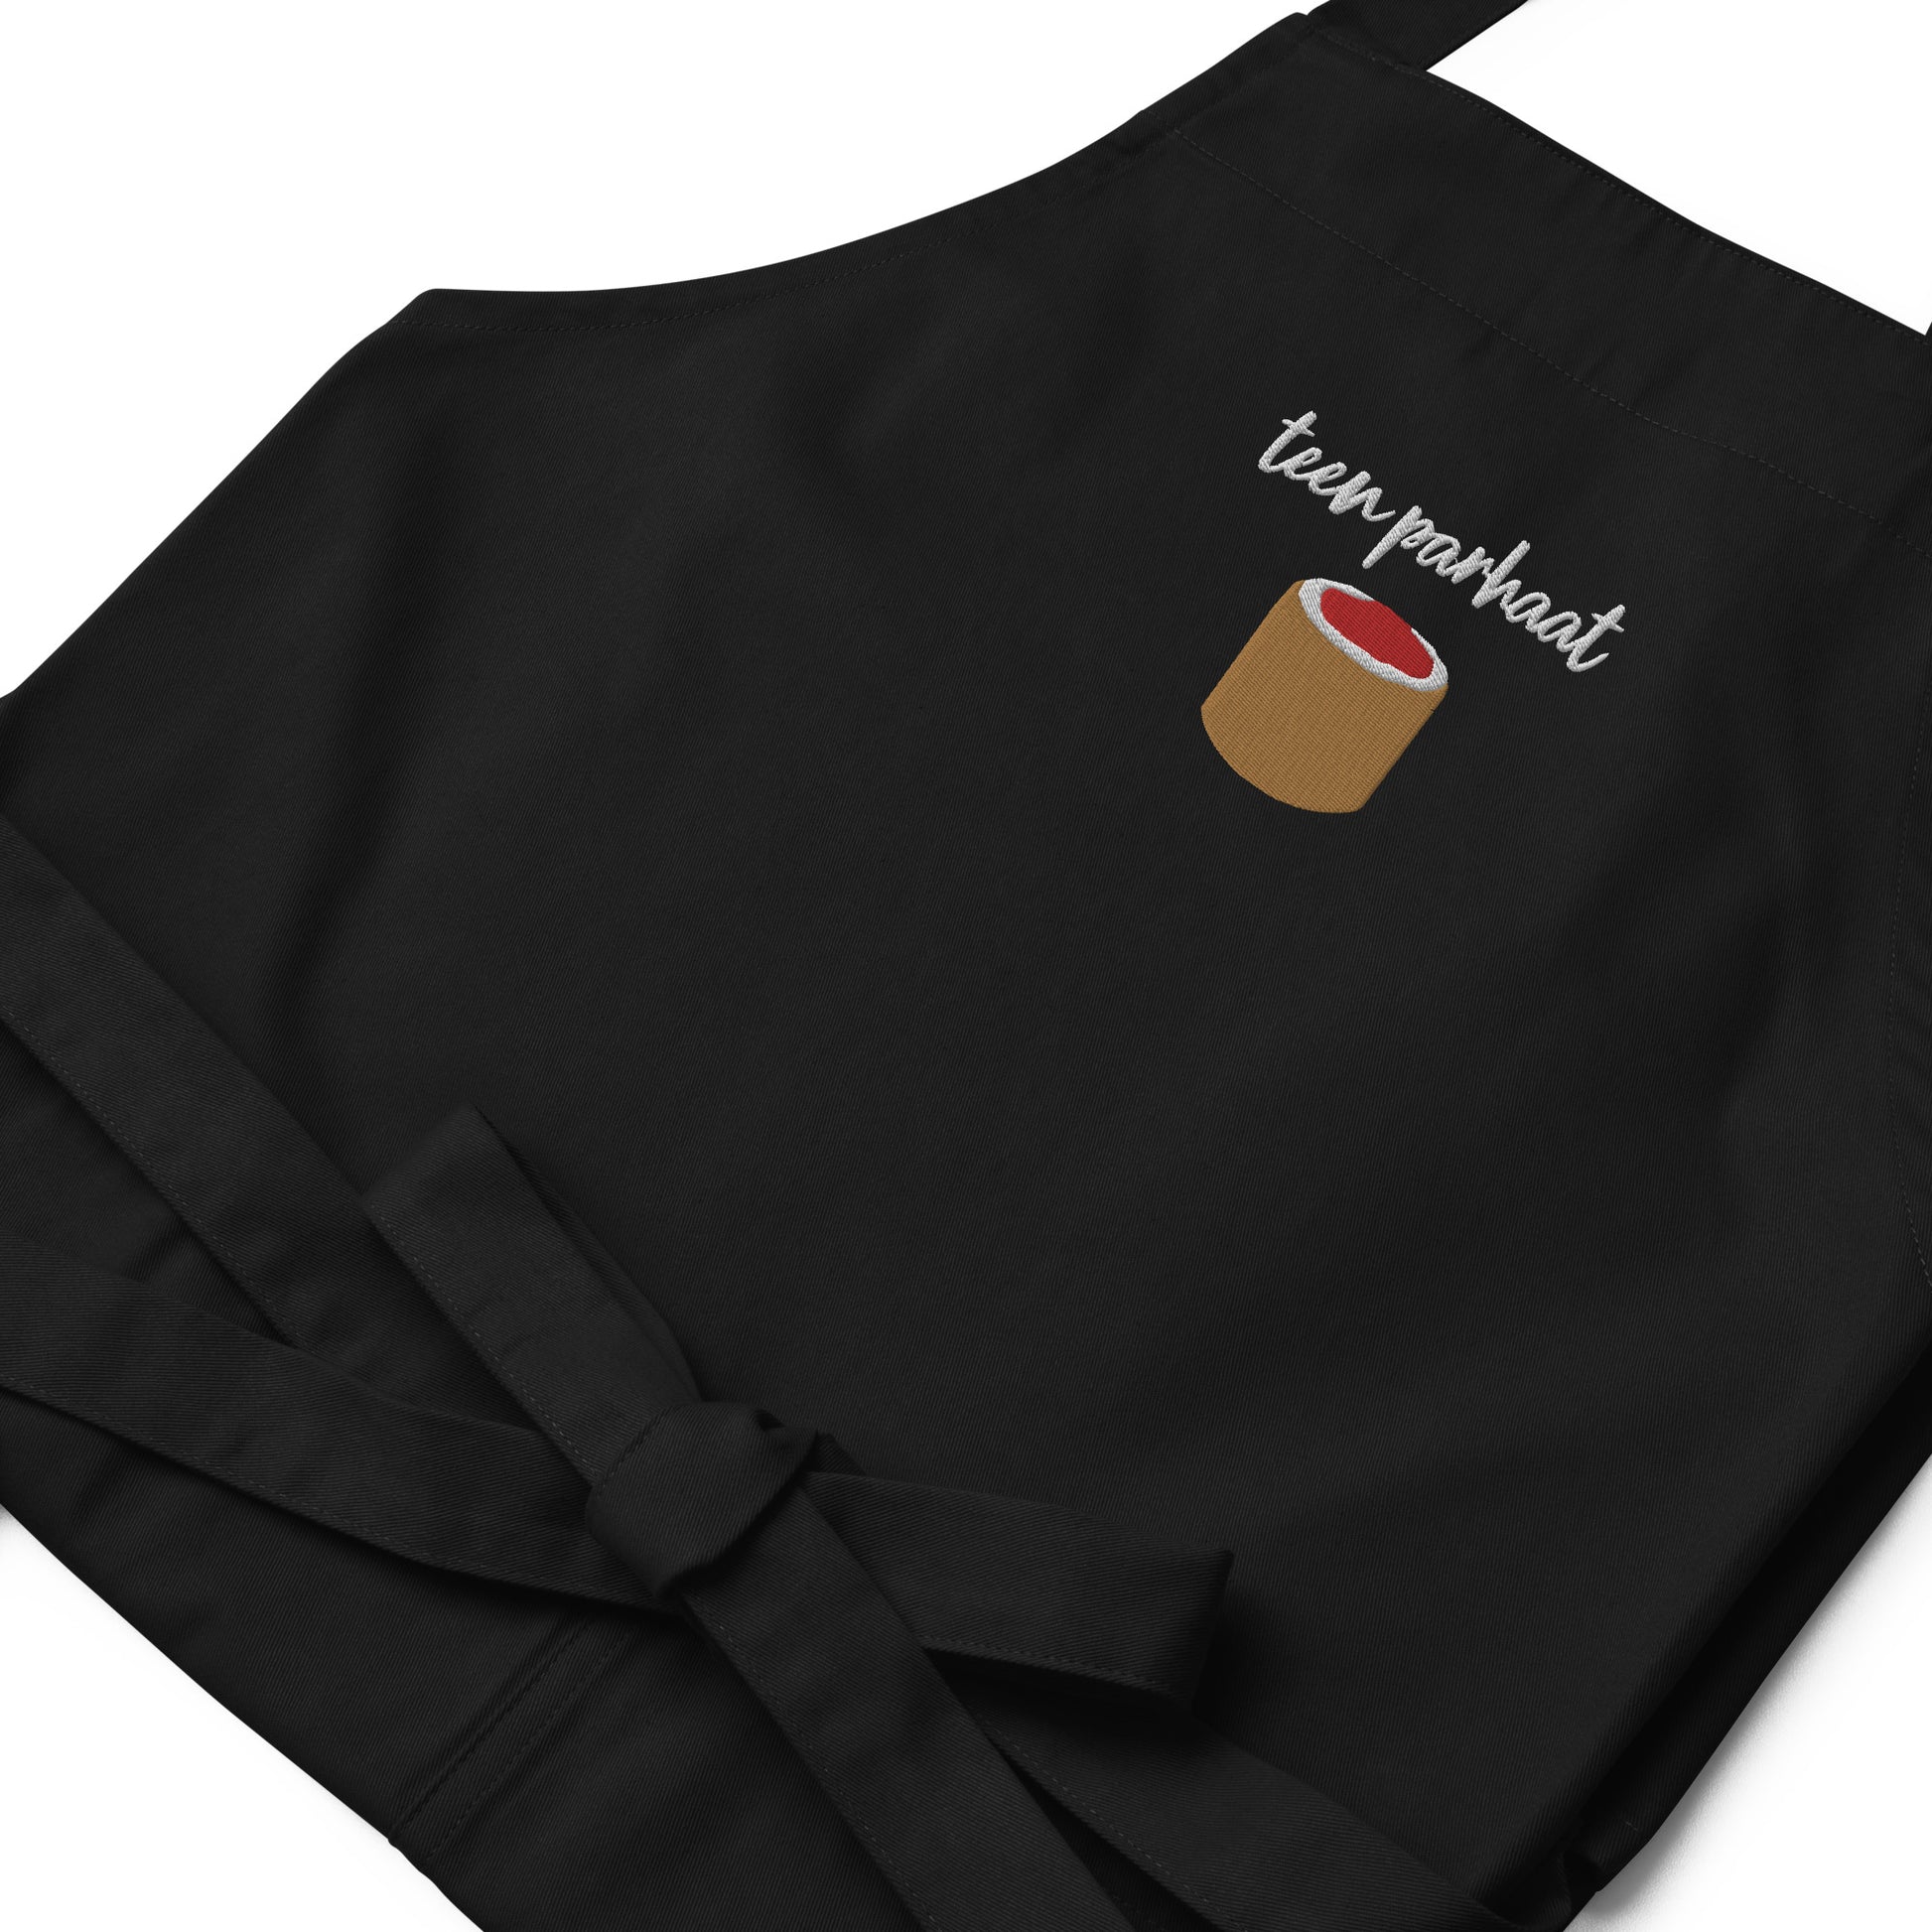 Runebergin Torttu - Organic cotton apron - Aprons- Print N Stuff - [designed in Turku FInland]